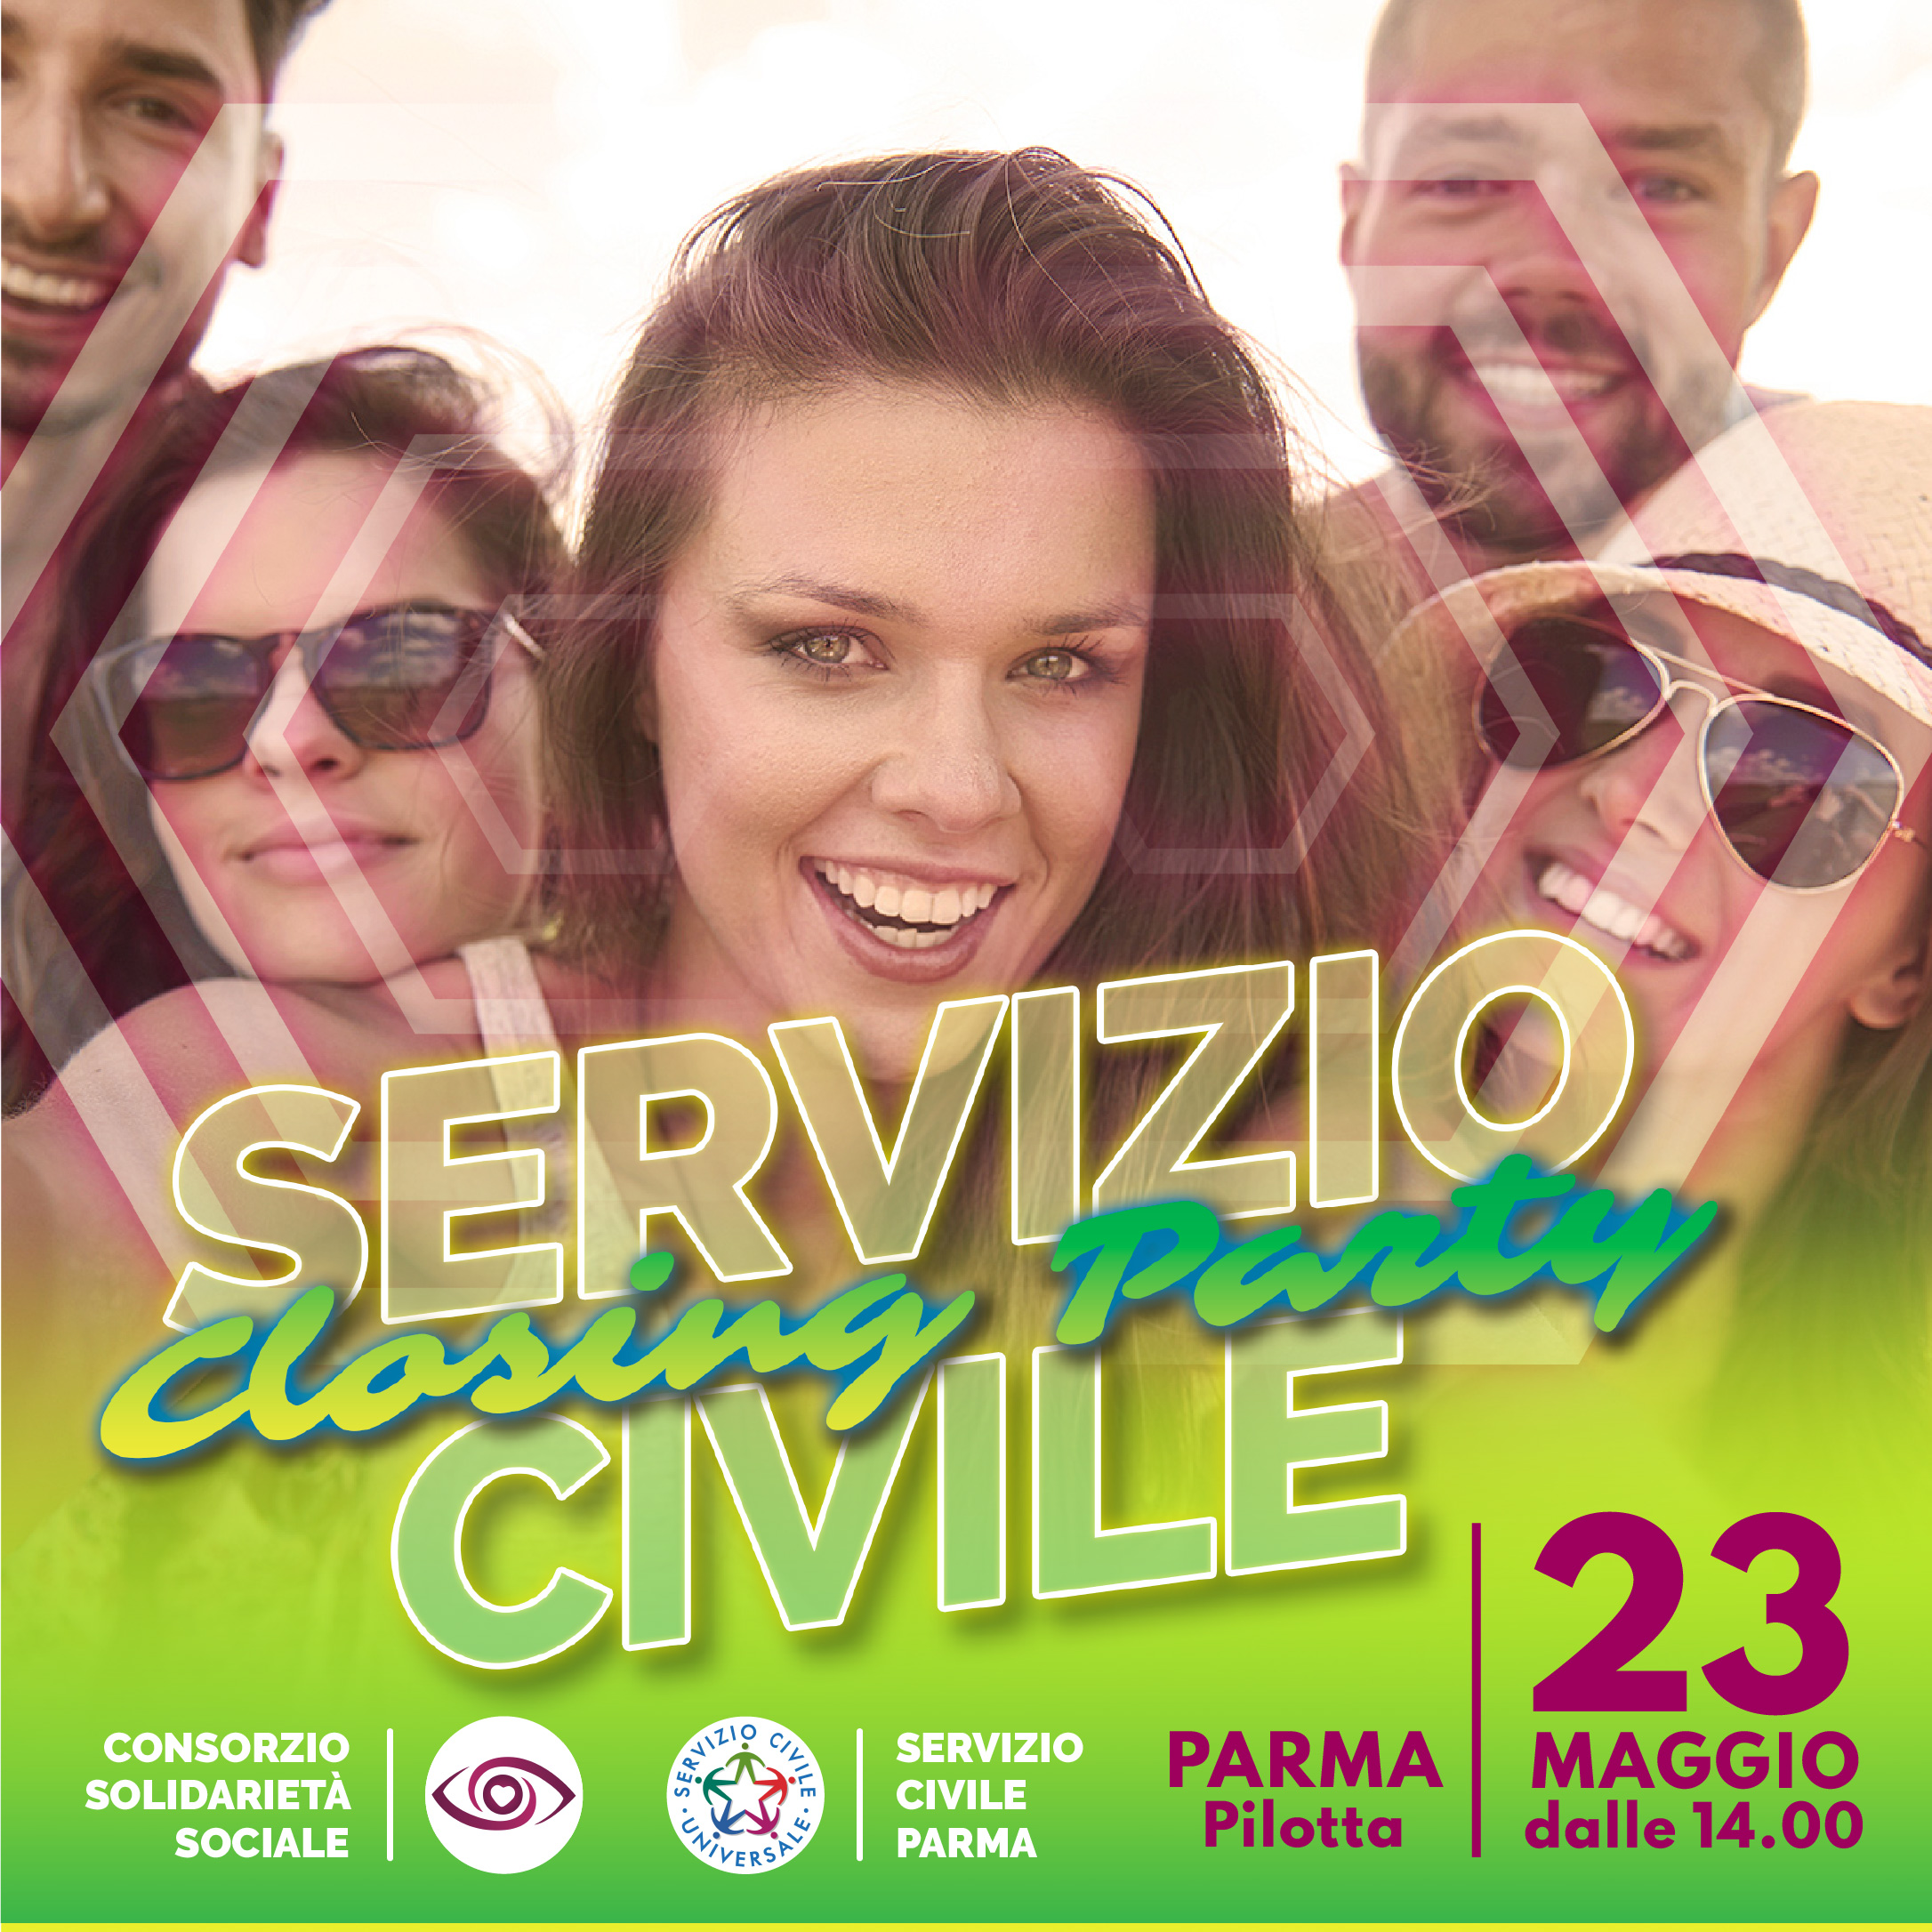 http://www.serviziocivileparma.it/web/servizio-civile-closing-party/